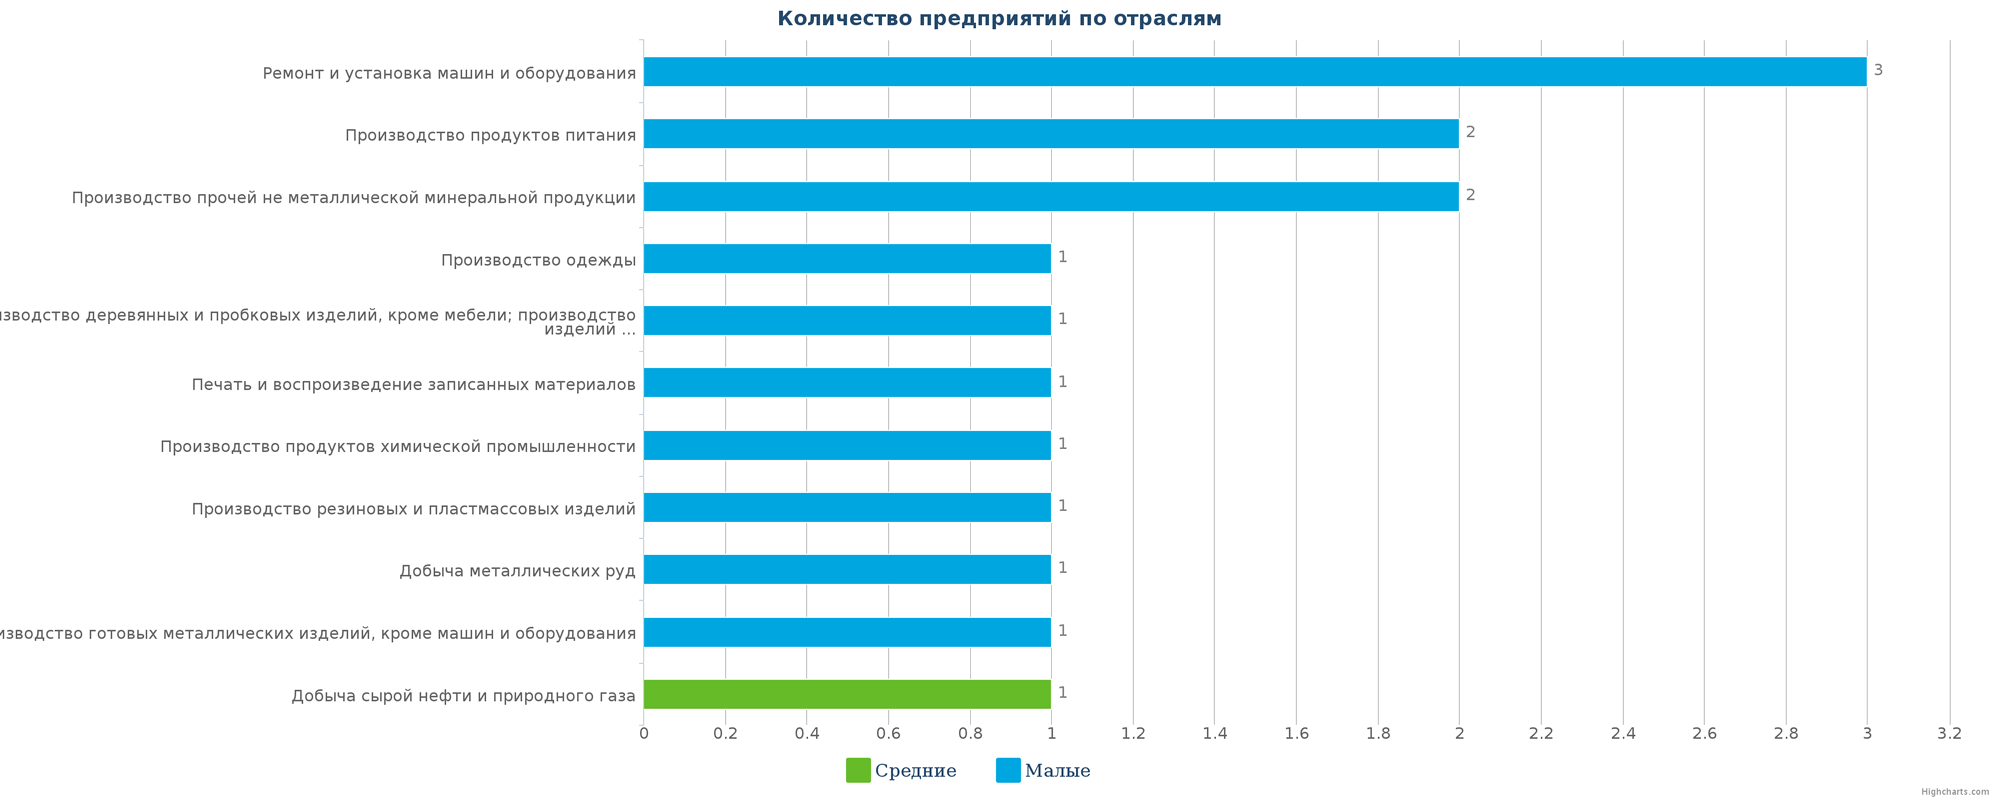 Количество ликвидированных производственных предприятий в РК по отраслям